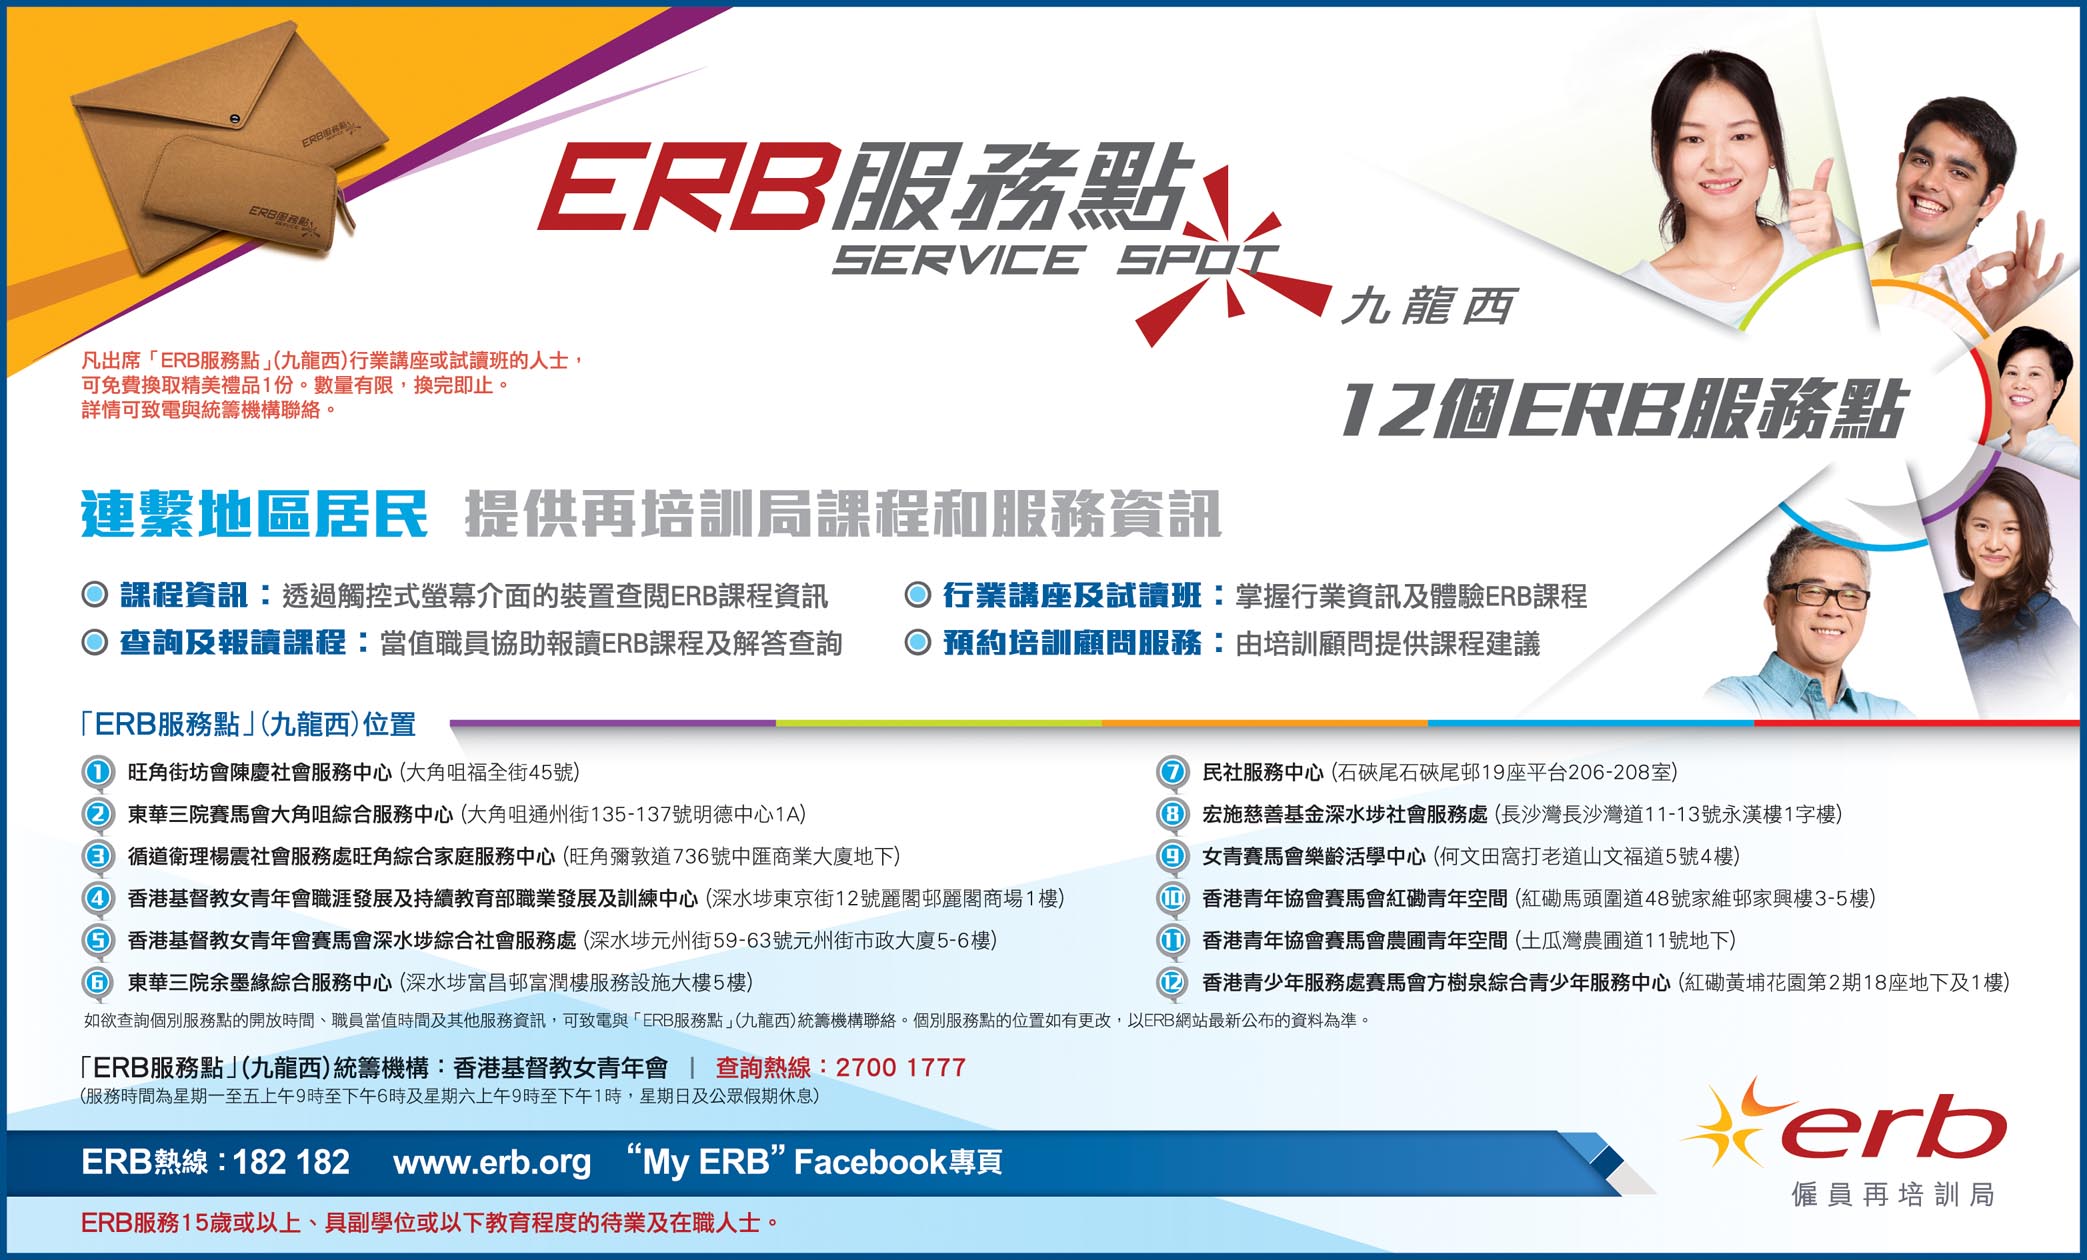 按此下载「ERB服务点」(九龙西)报章广告图像版